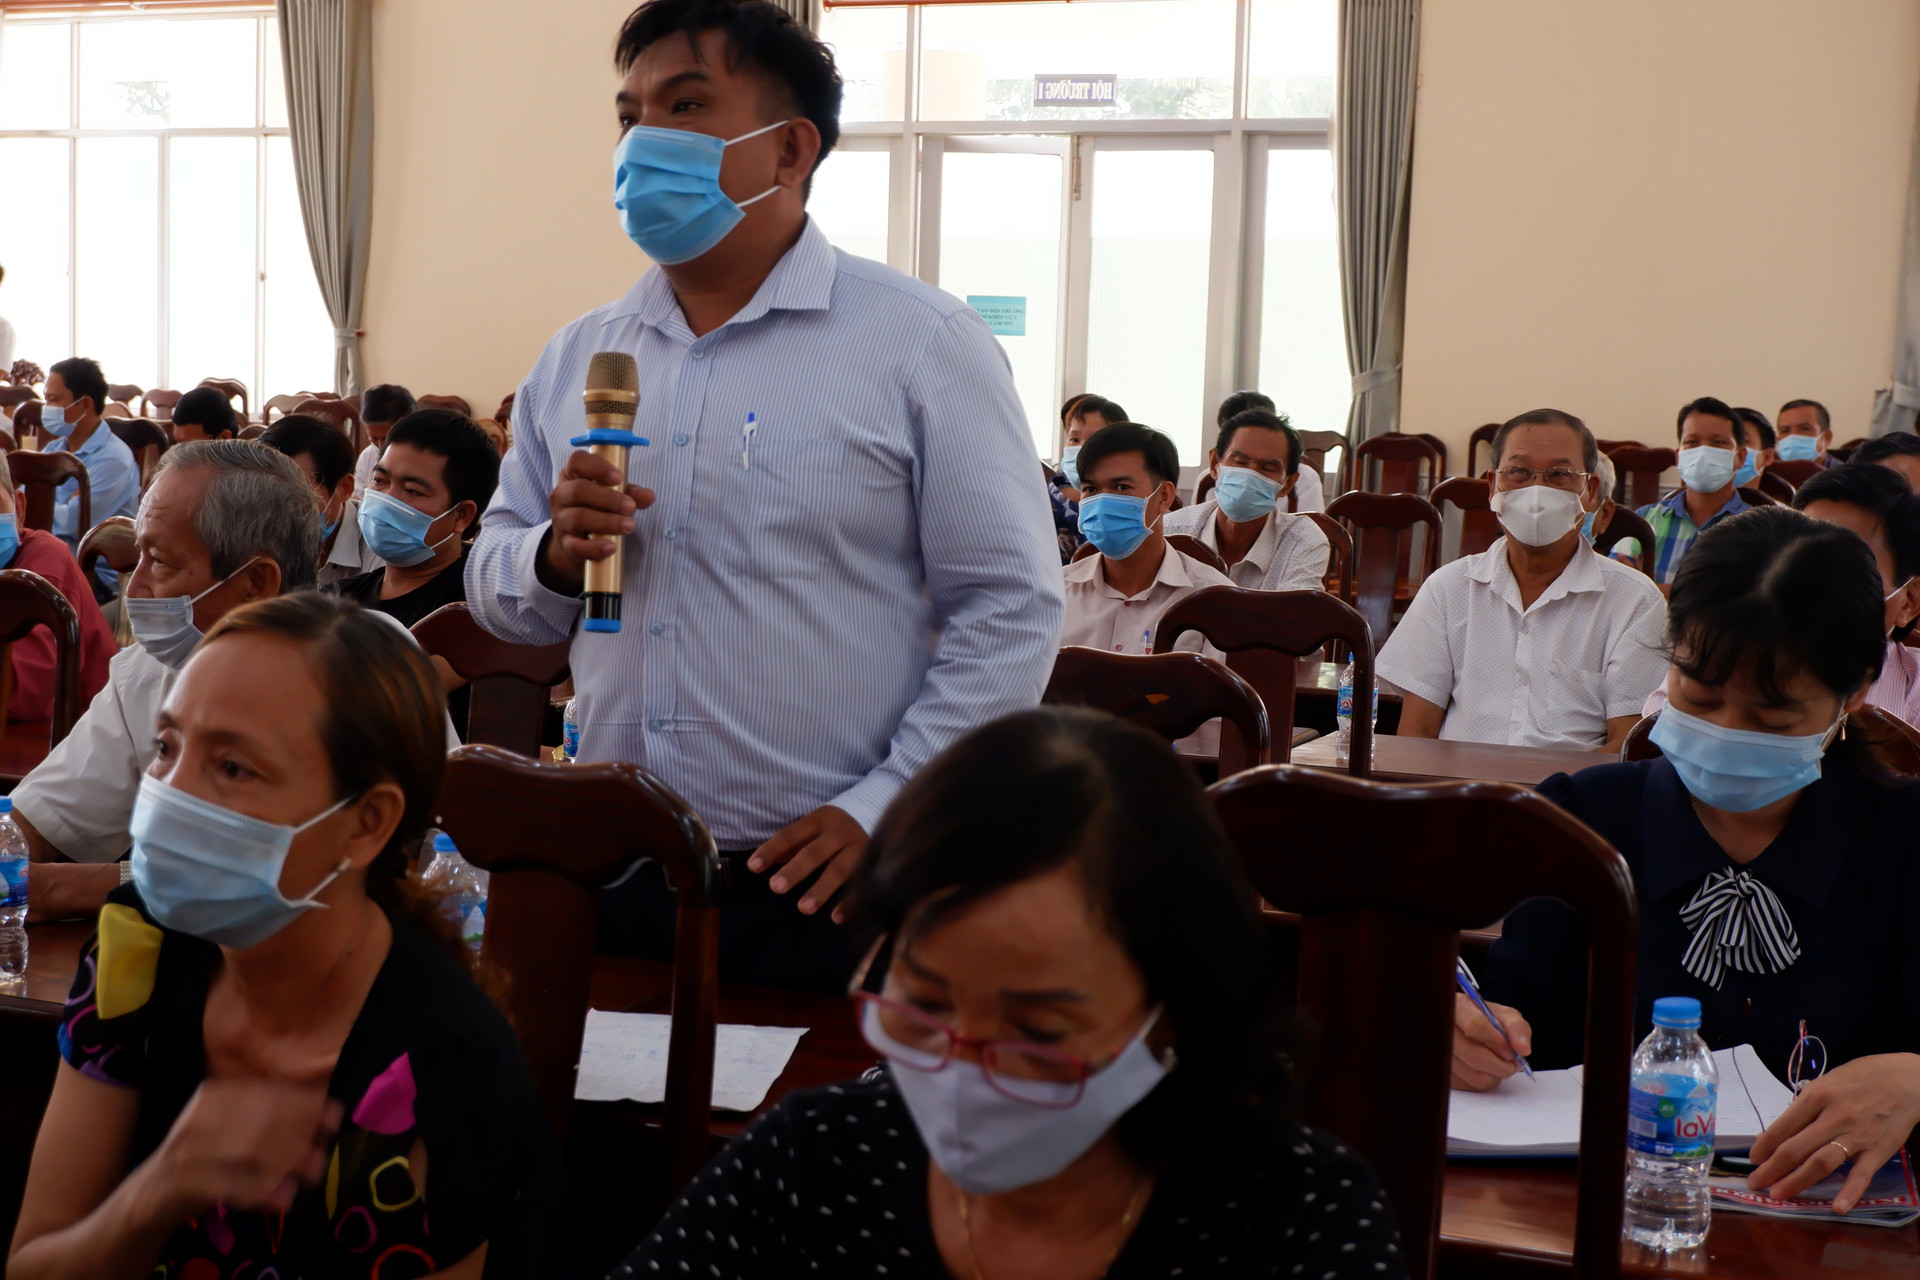 Cử tri huyện Thới Lai, TP Cần Thơ kiến nghị với đại biểu tại hội nghị tiếp xúc cử tri